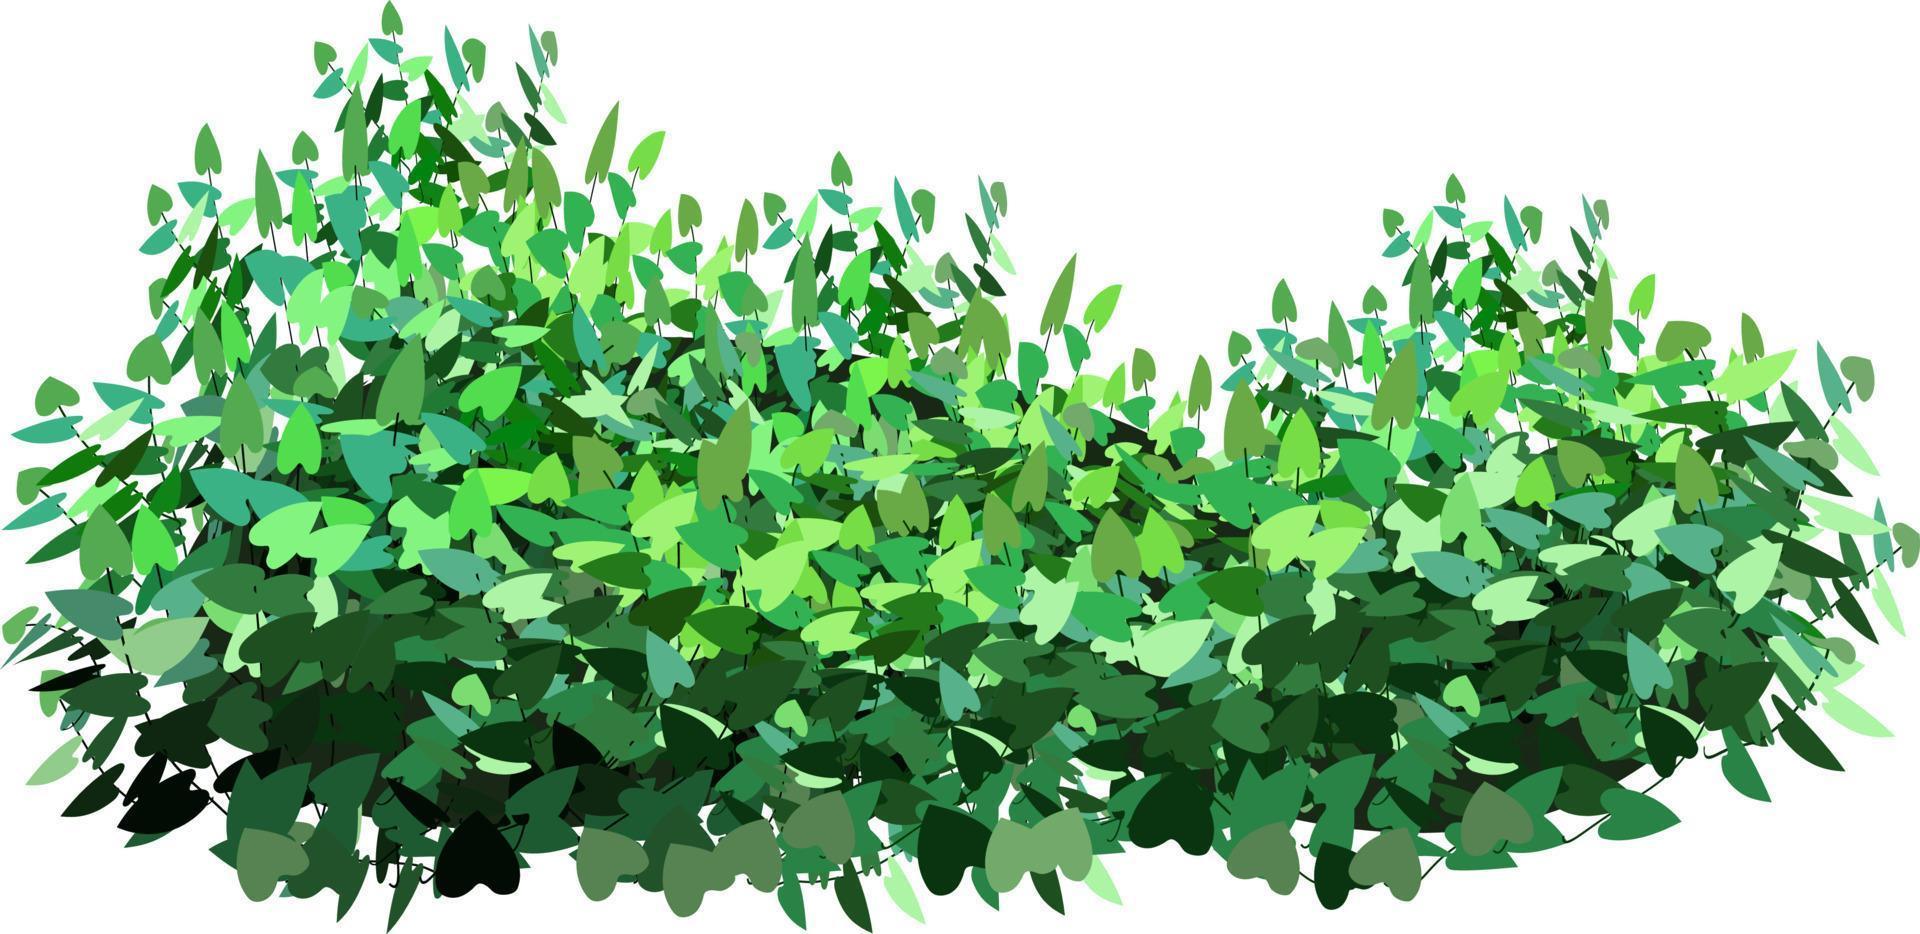 Ziergrünpflanze in Form einer Hecke. Efeu arch.realistischer Gartenstrauch, Saisonbusch, Buchsbaum, Baumkronenbuschlaub. vektor